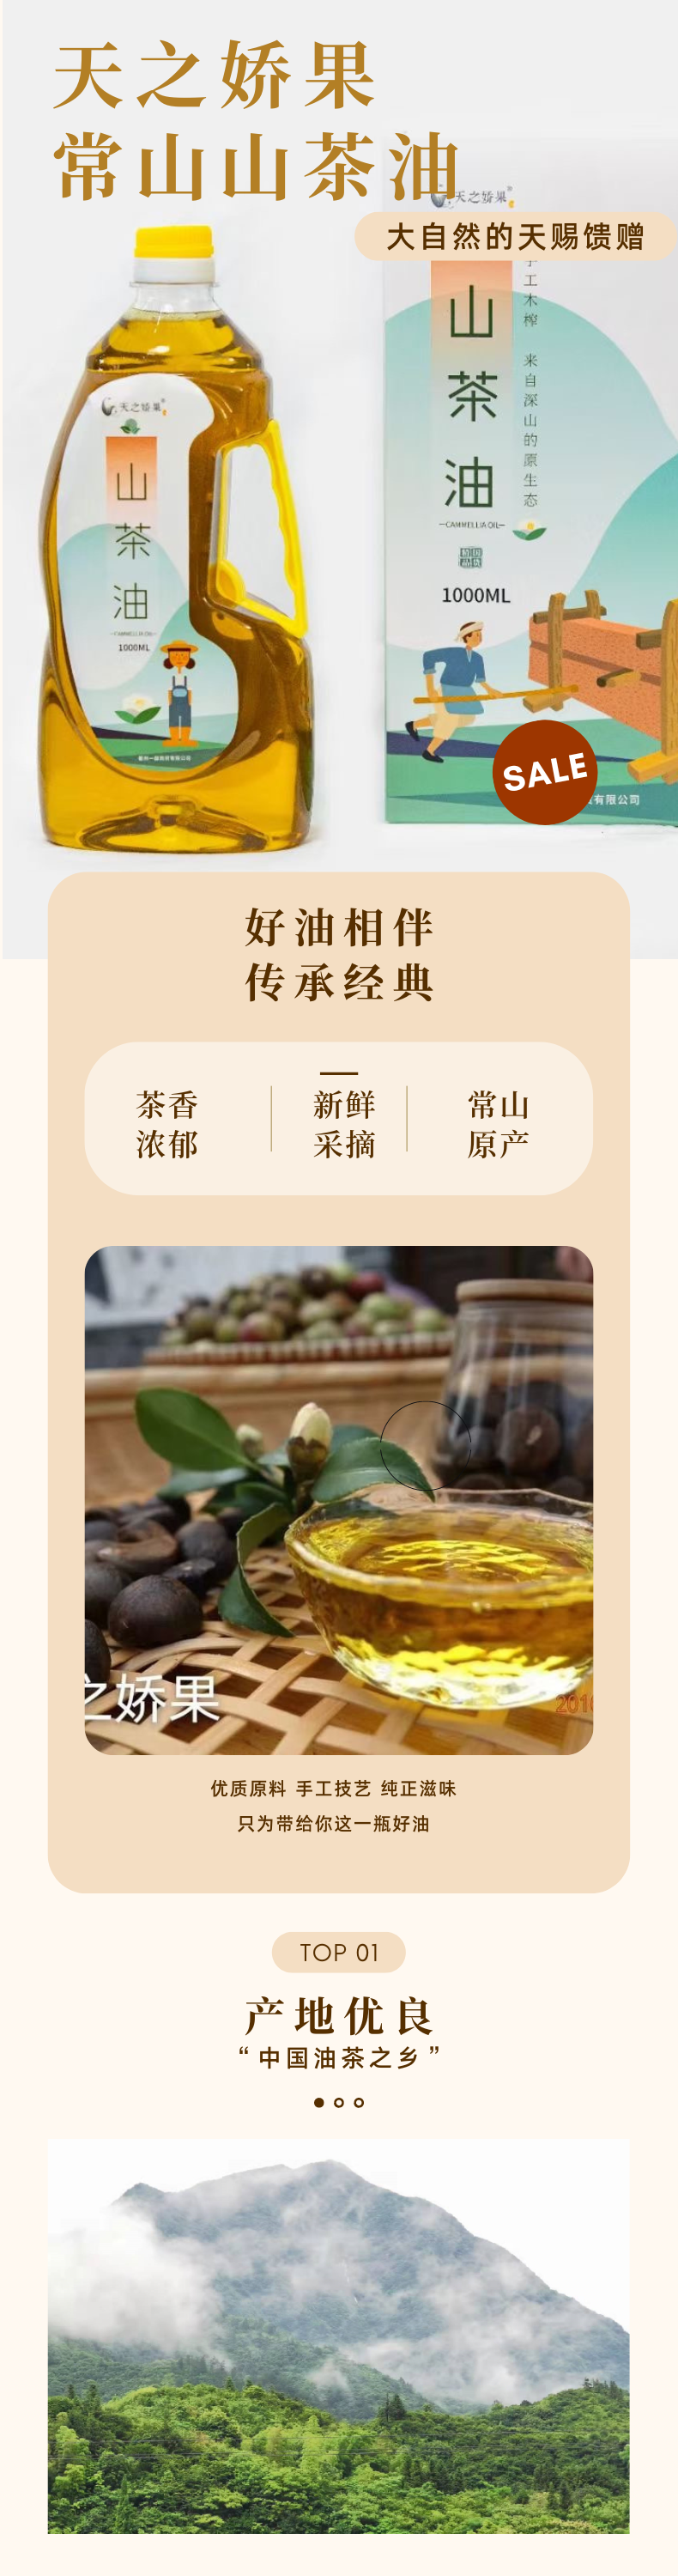 山茶油长寿月子油古法手工压榨纯植物萃取茶籽油野生原生态油茶1L*1详情1